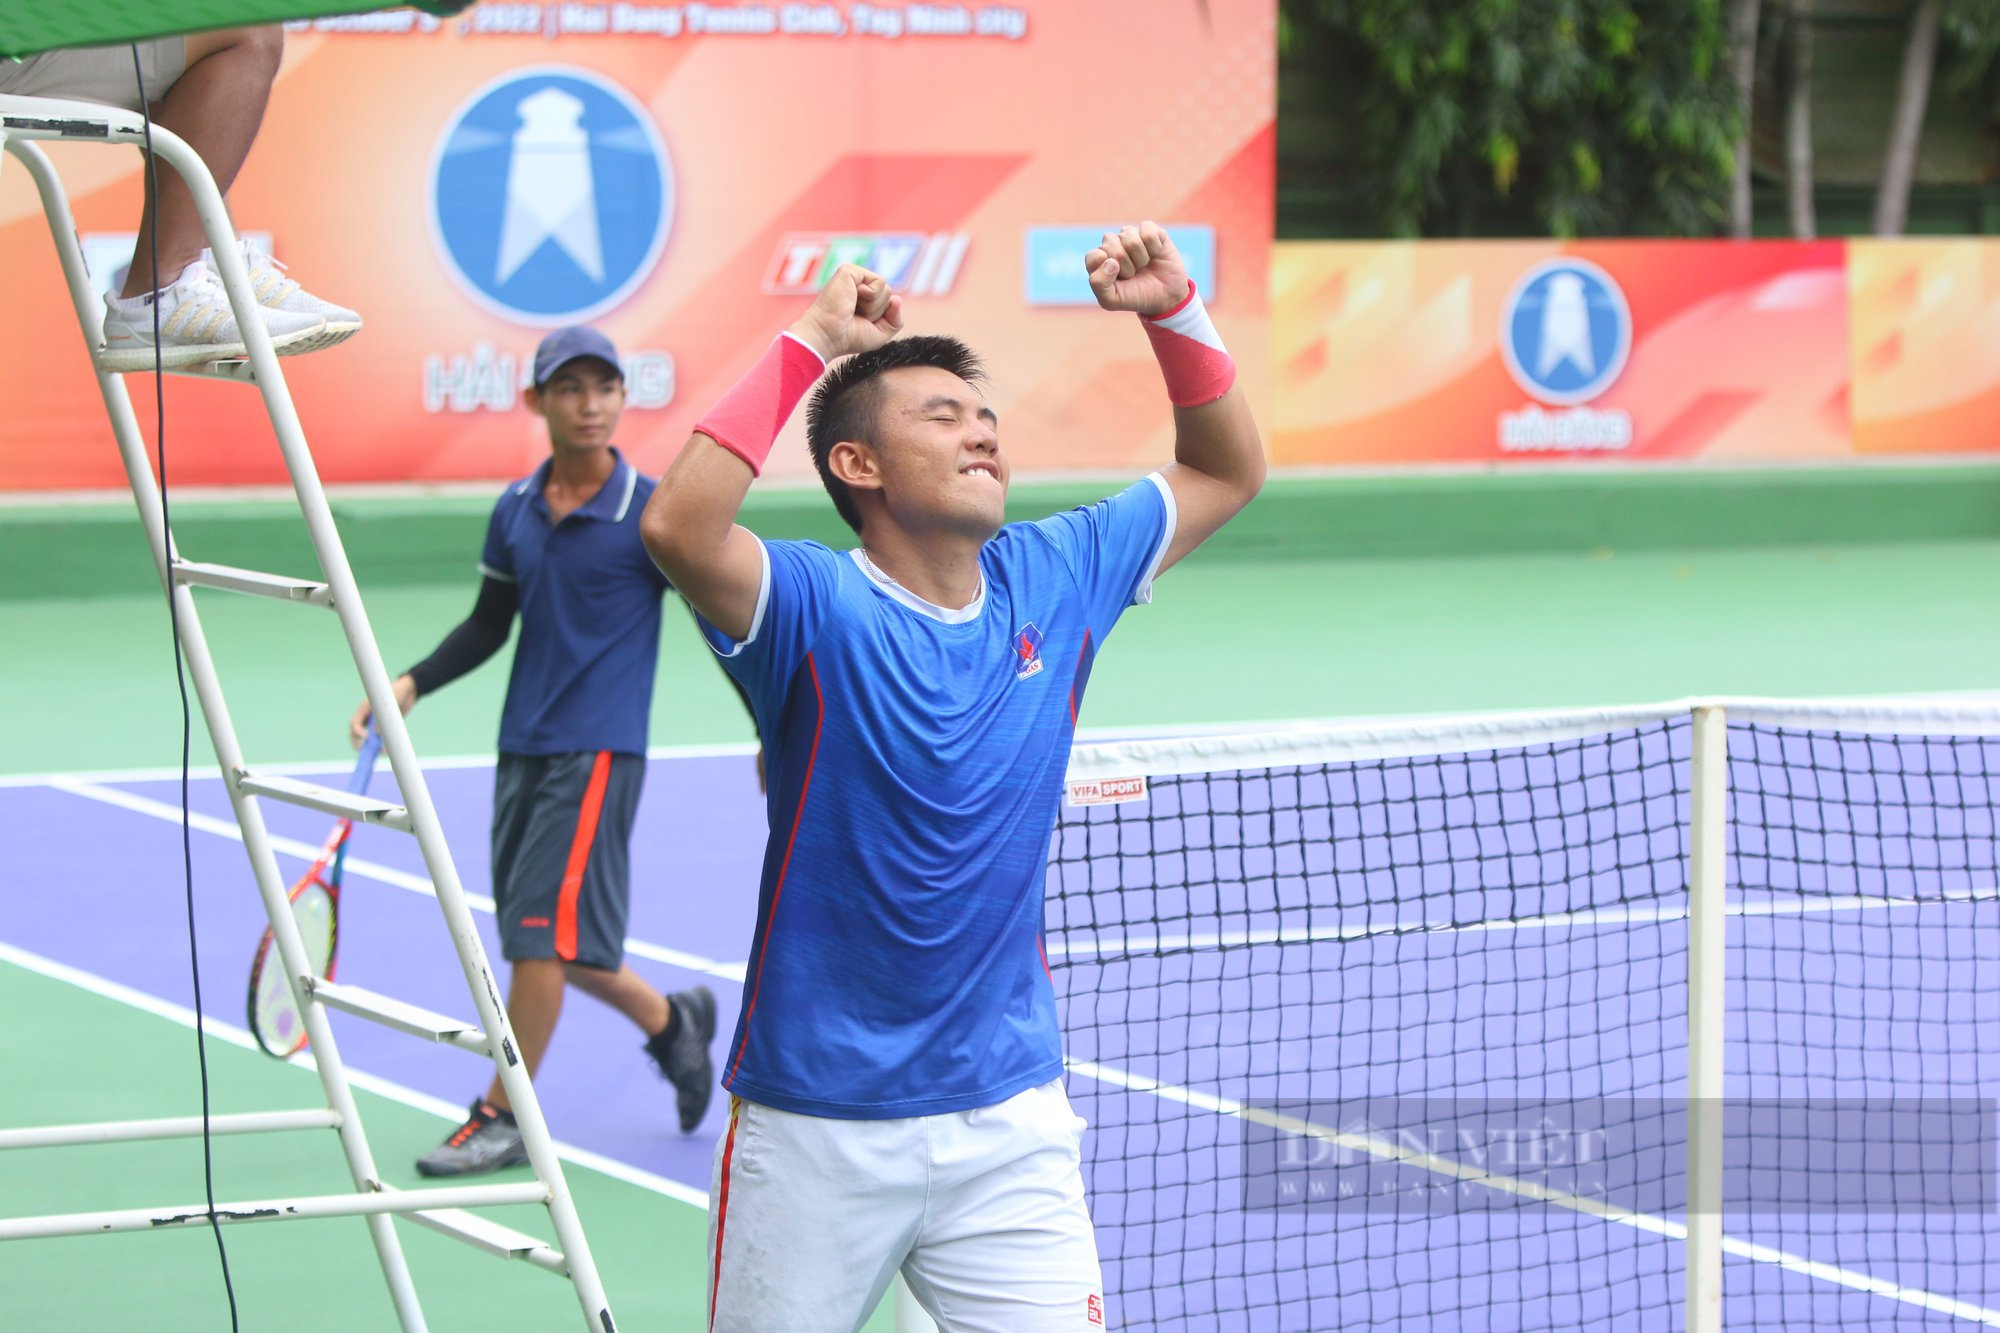 Ly Hoang Nam 贏得了 U25 男子單打網球錦標賽 - 照片 3。